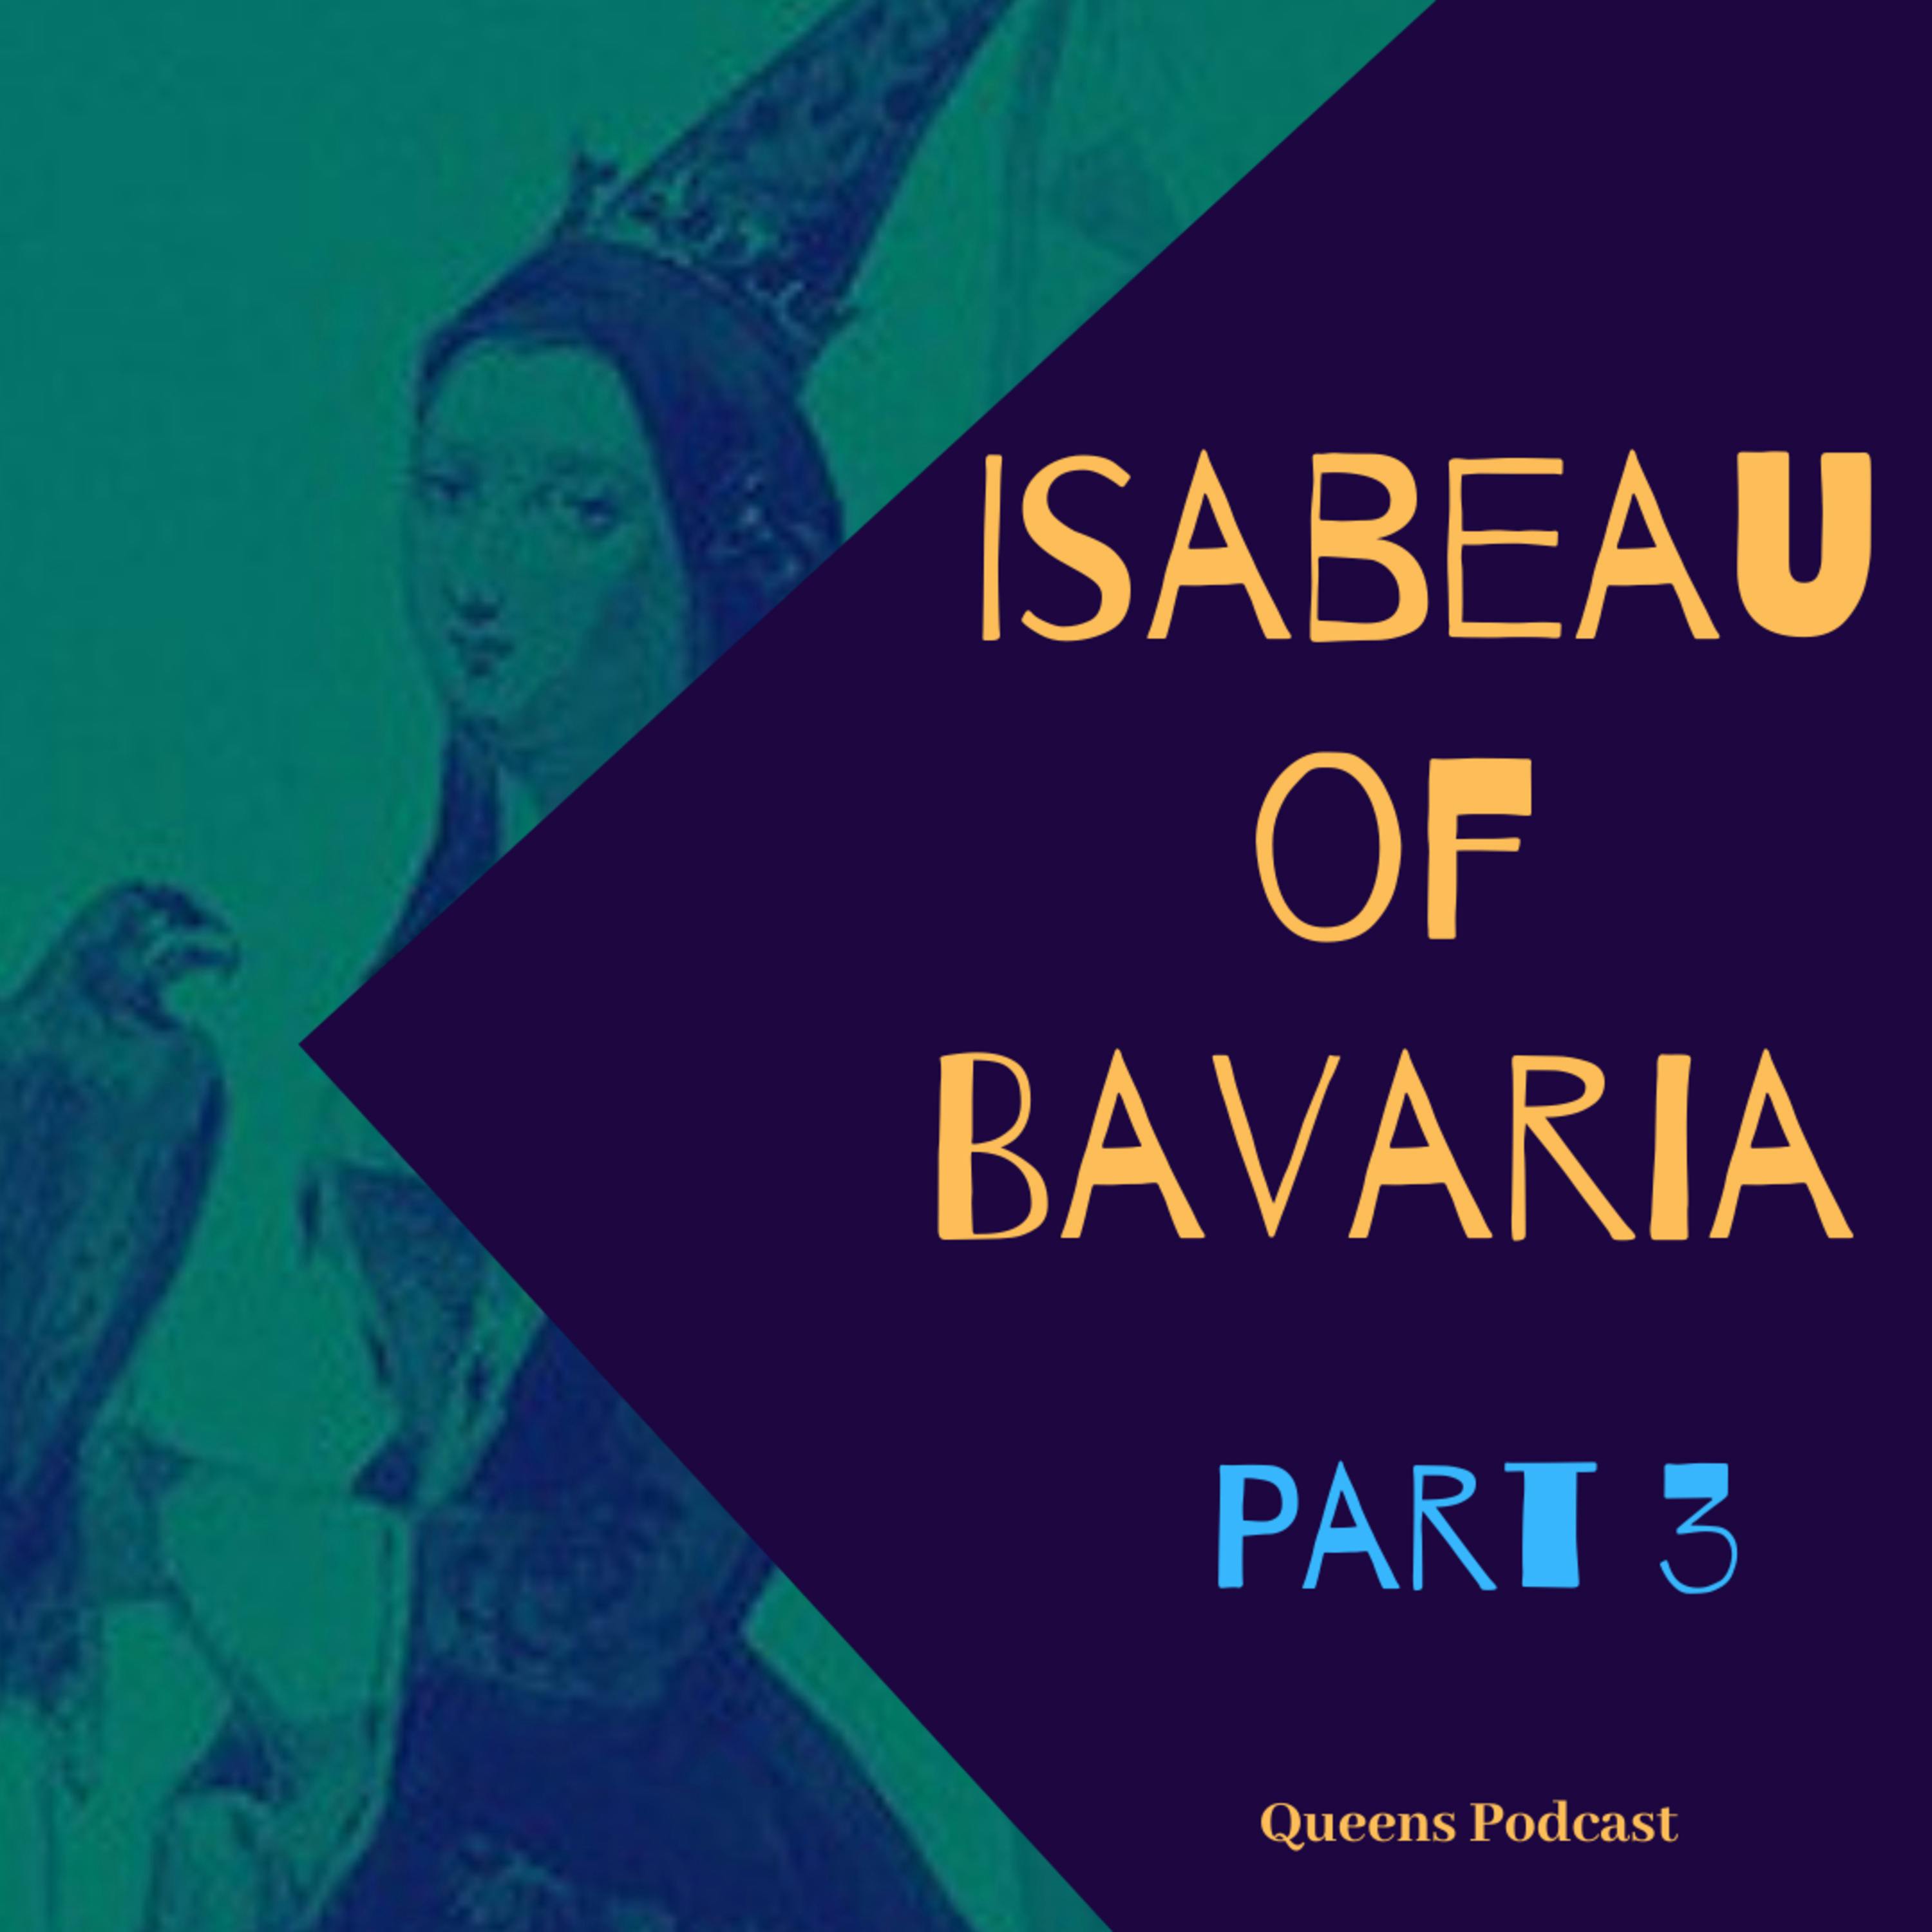 Isabeau of Bavaria, part 3